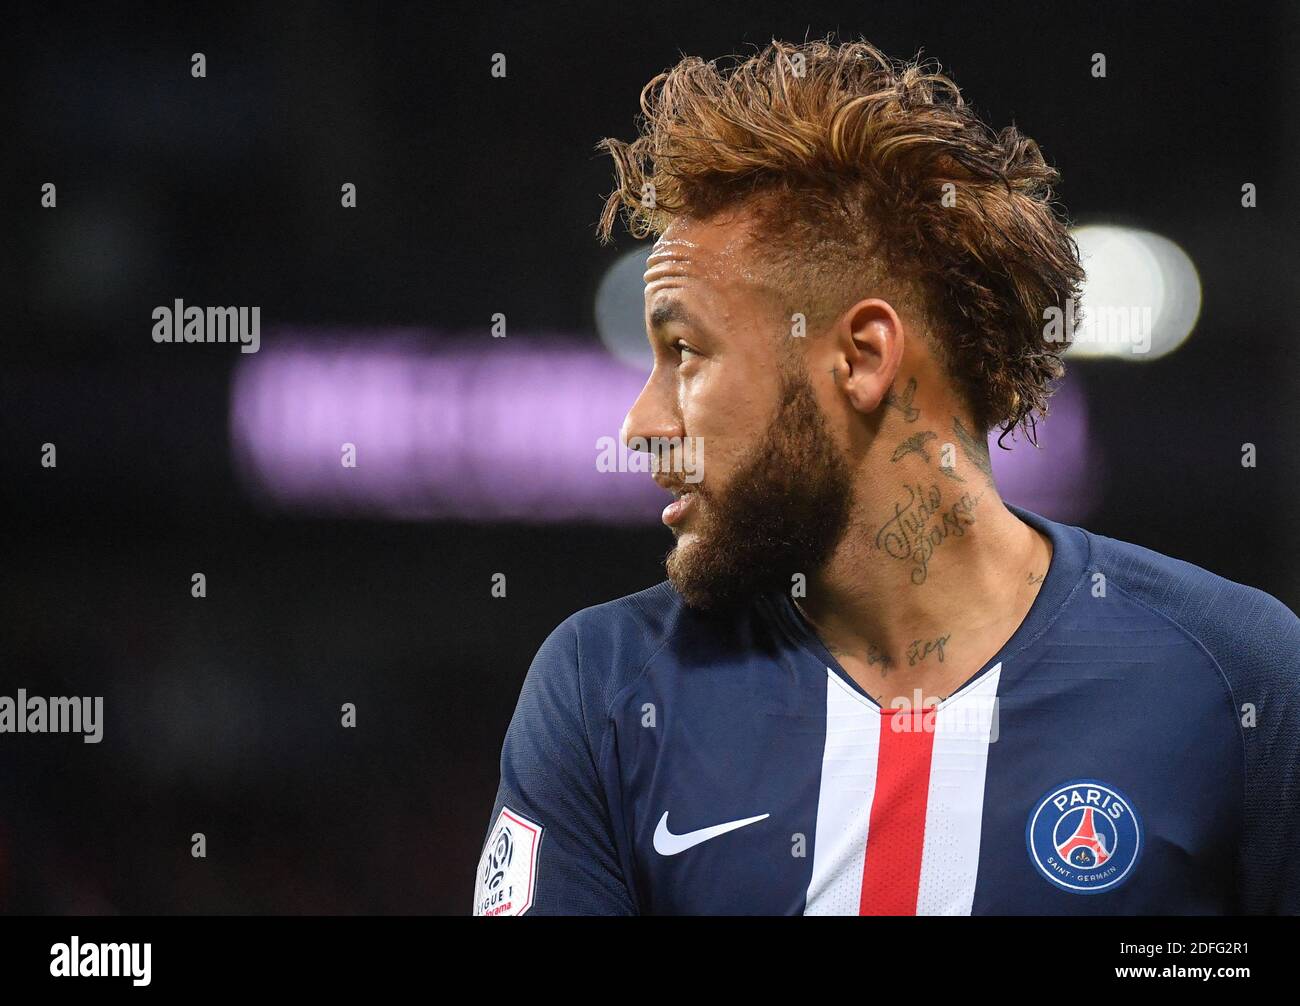 Foto del archivo fechada el 22 de noviembre de 2019 del delantero brasileño  de Paris Saint-Germain Neymar en acción durante el partido de fútbol Ligue  1 Paris Saint-Germain (PSG) contra Lille (LOSC)